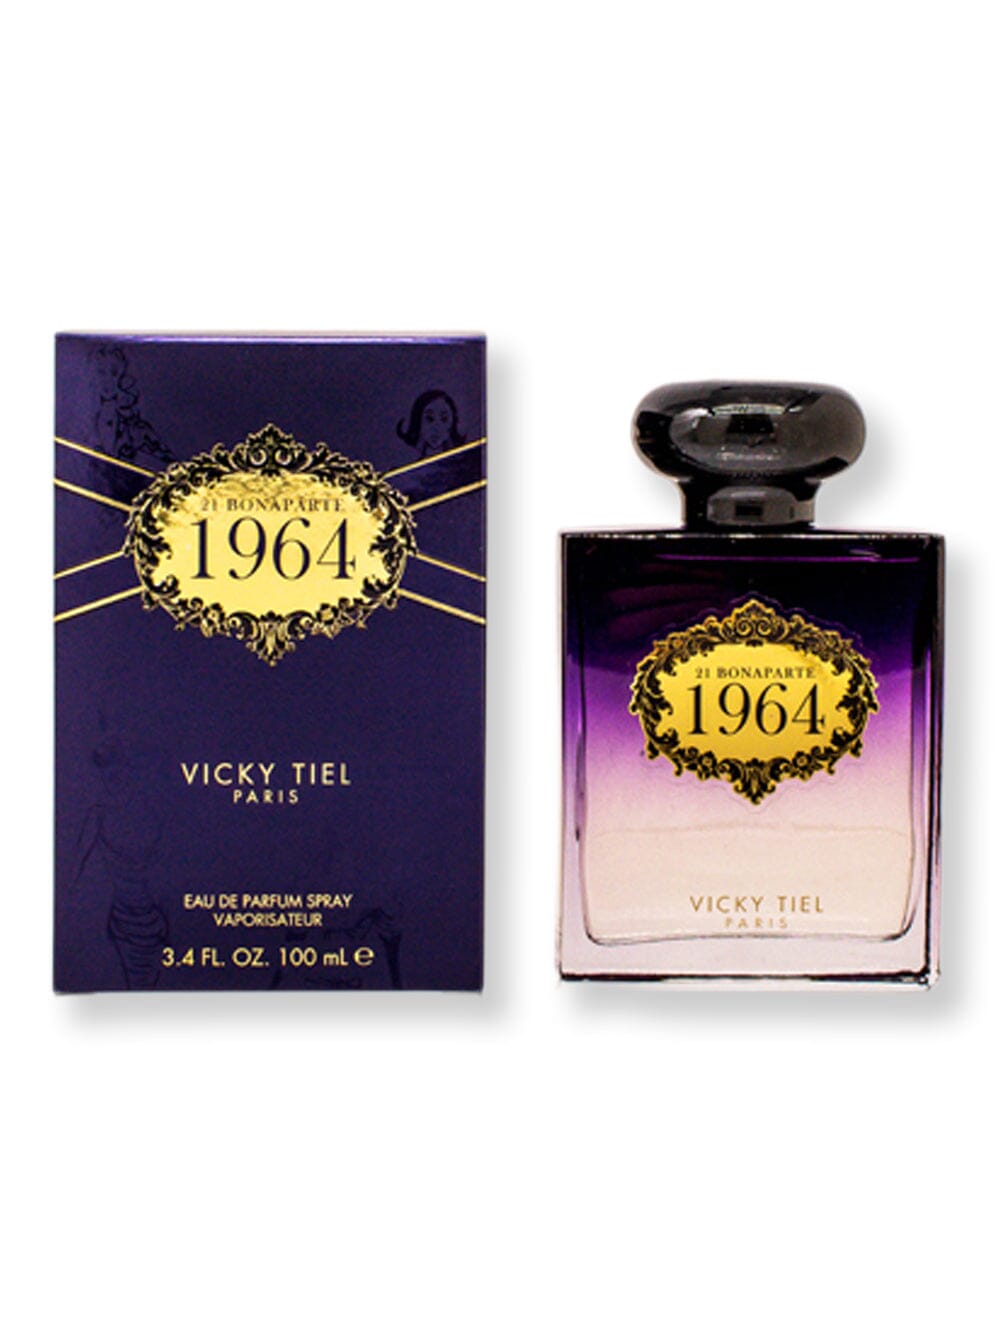 Vicky Tiel Vicky Tiel 21 Boneparte 1964 EDP Spray 3.4 oz100 ml Perfume 